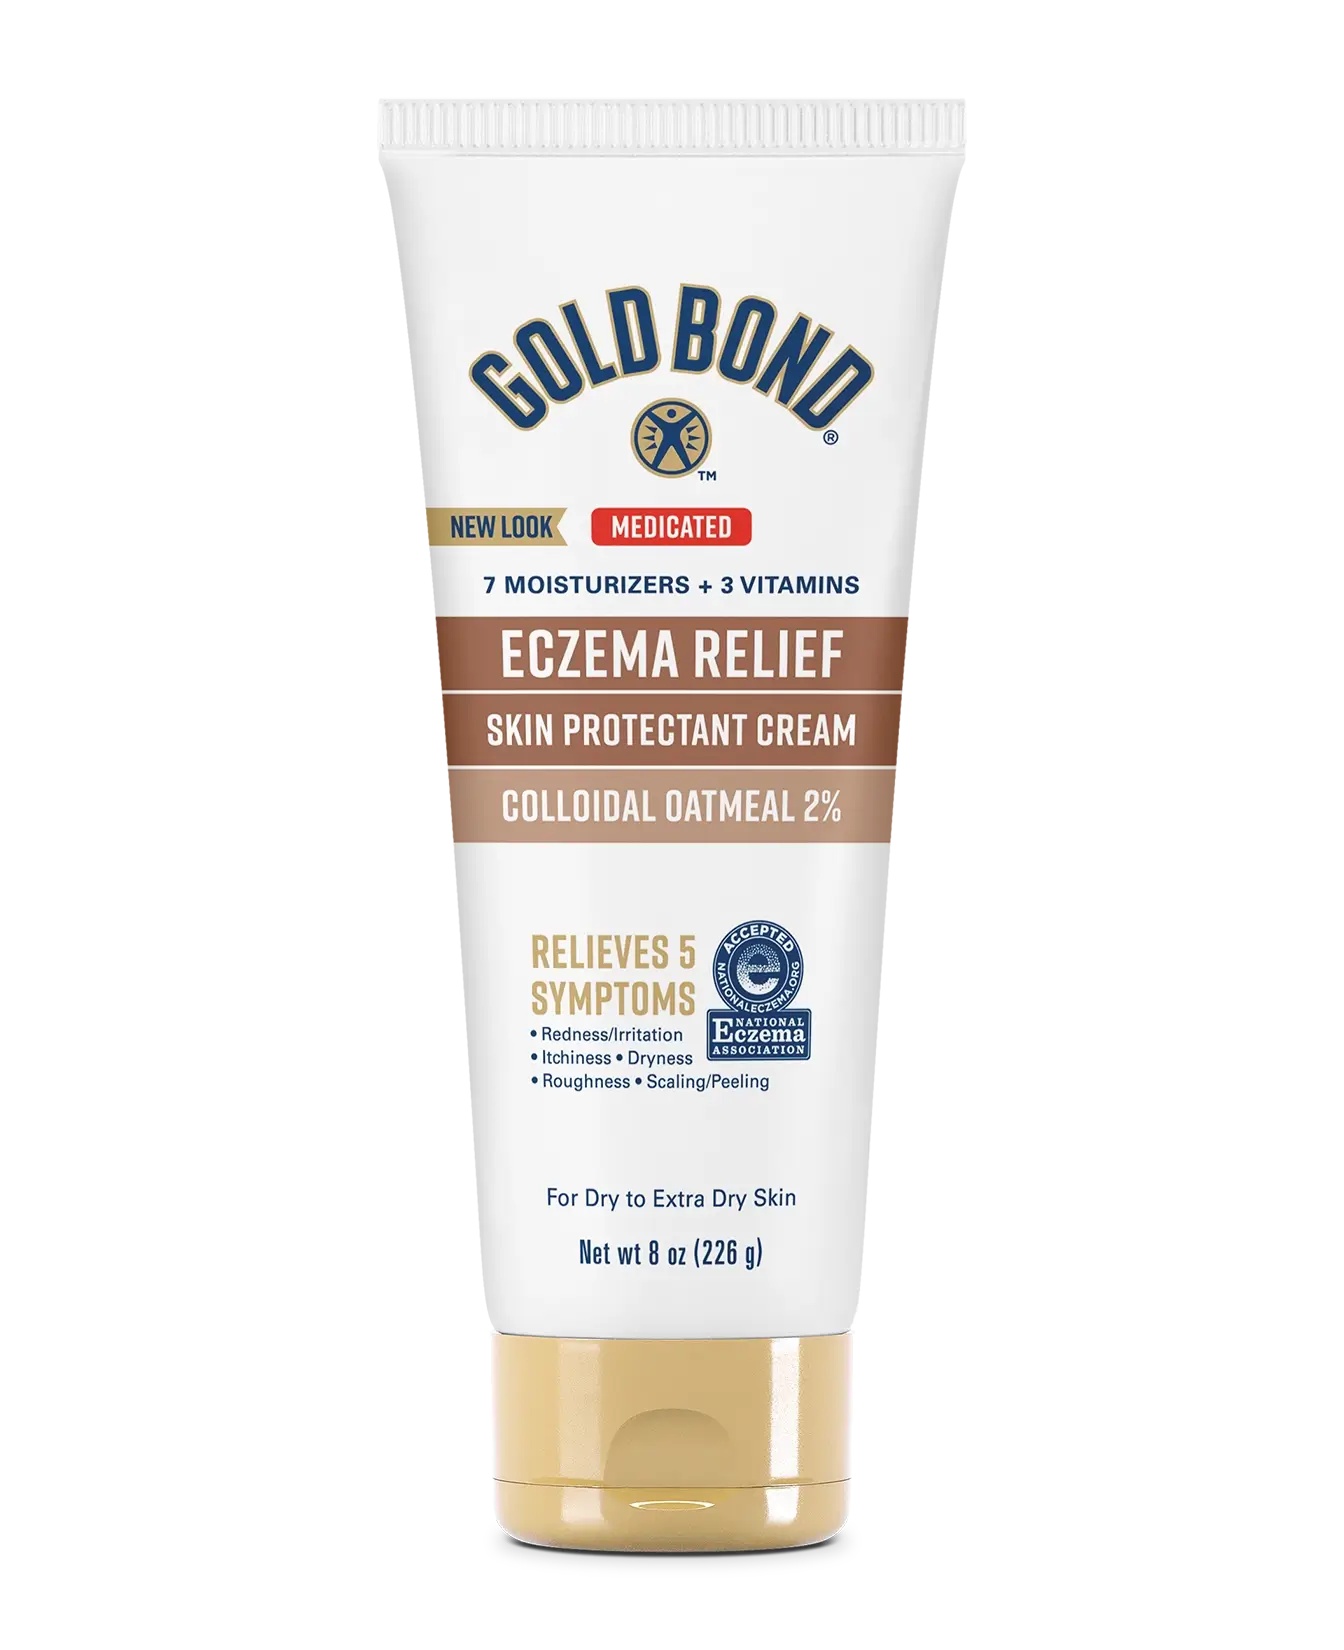 FEMMENORDIC's choice in the Gold Bond vs Eucerin eczema relief comparison, the Gold Bond Cream for Eczema Relief